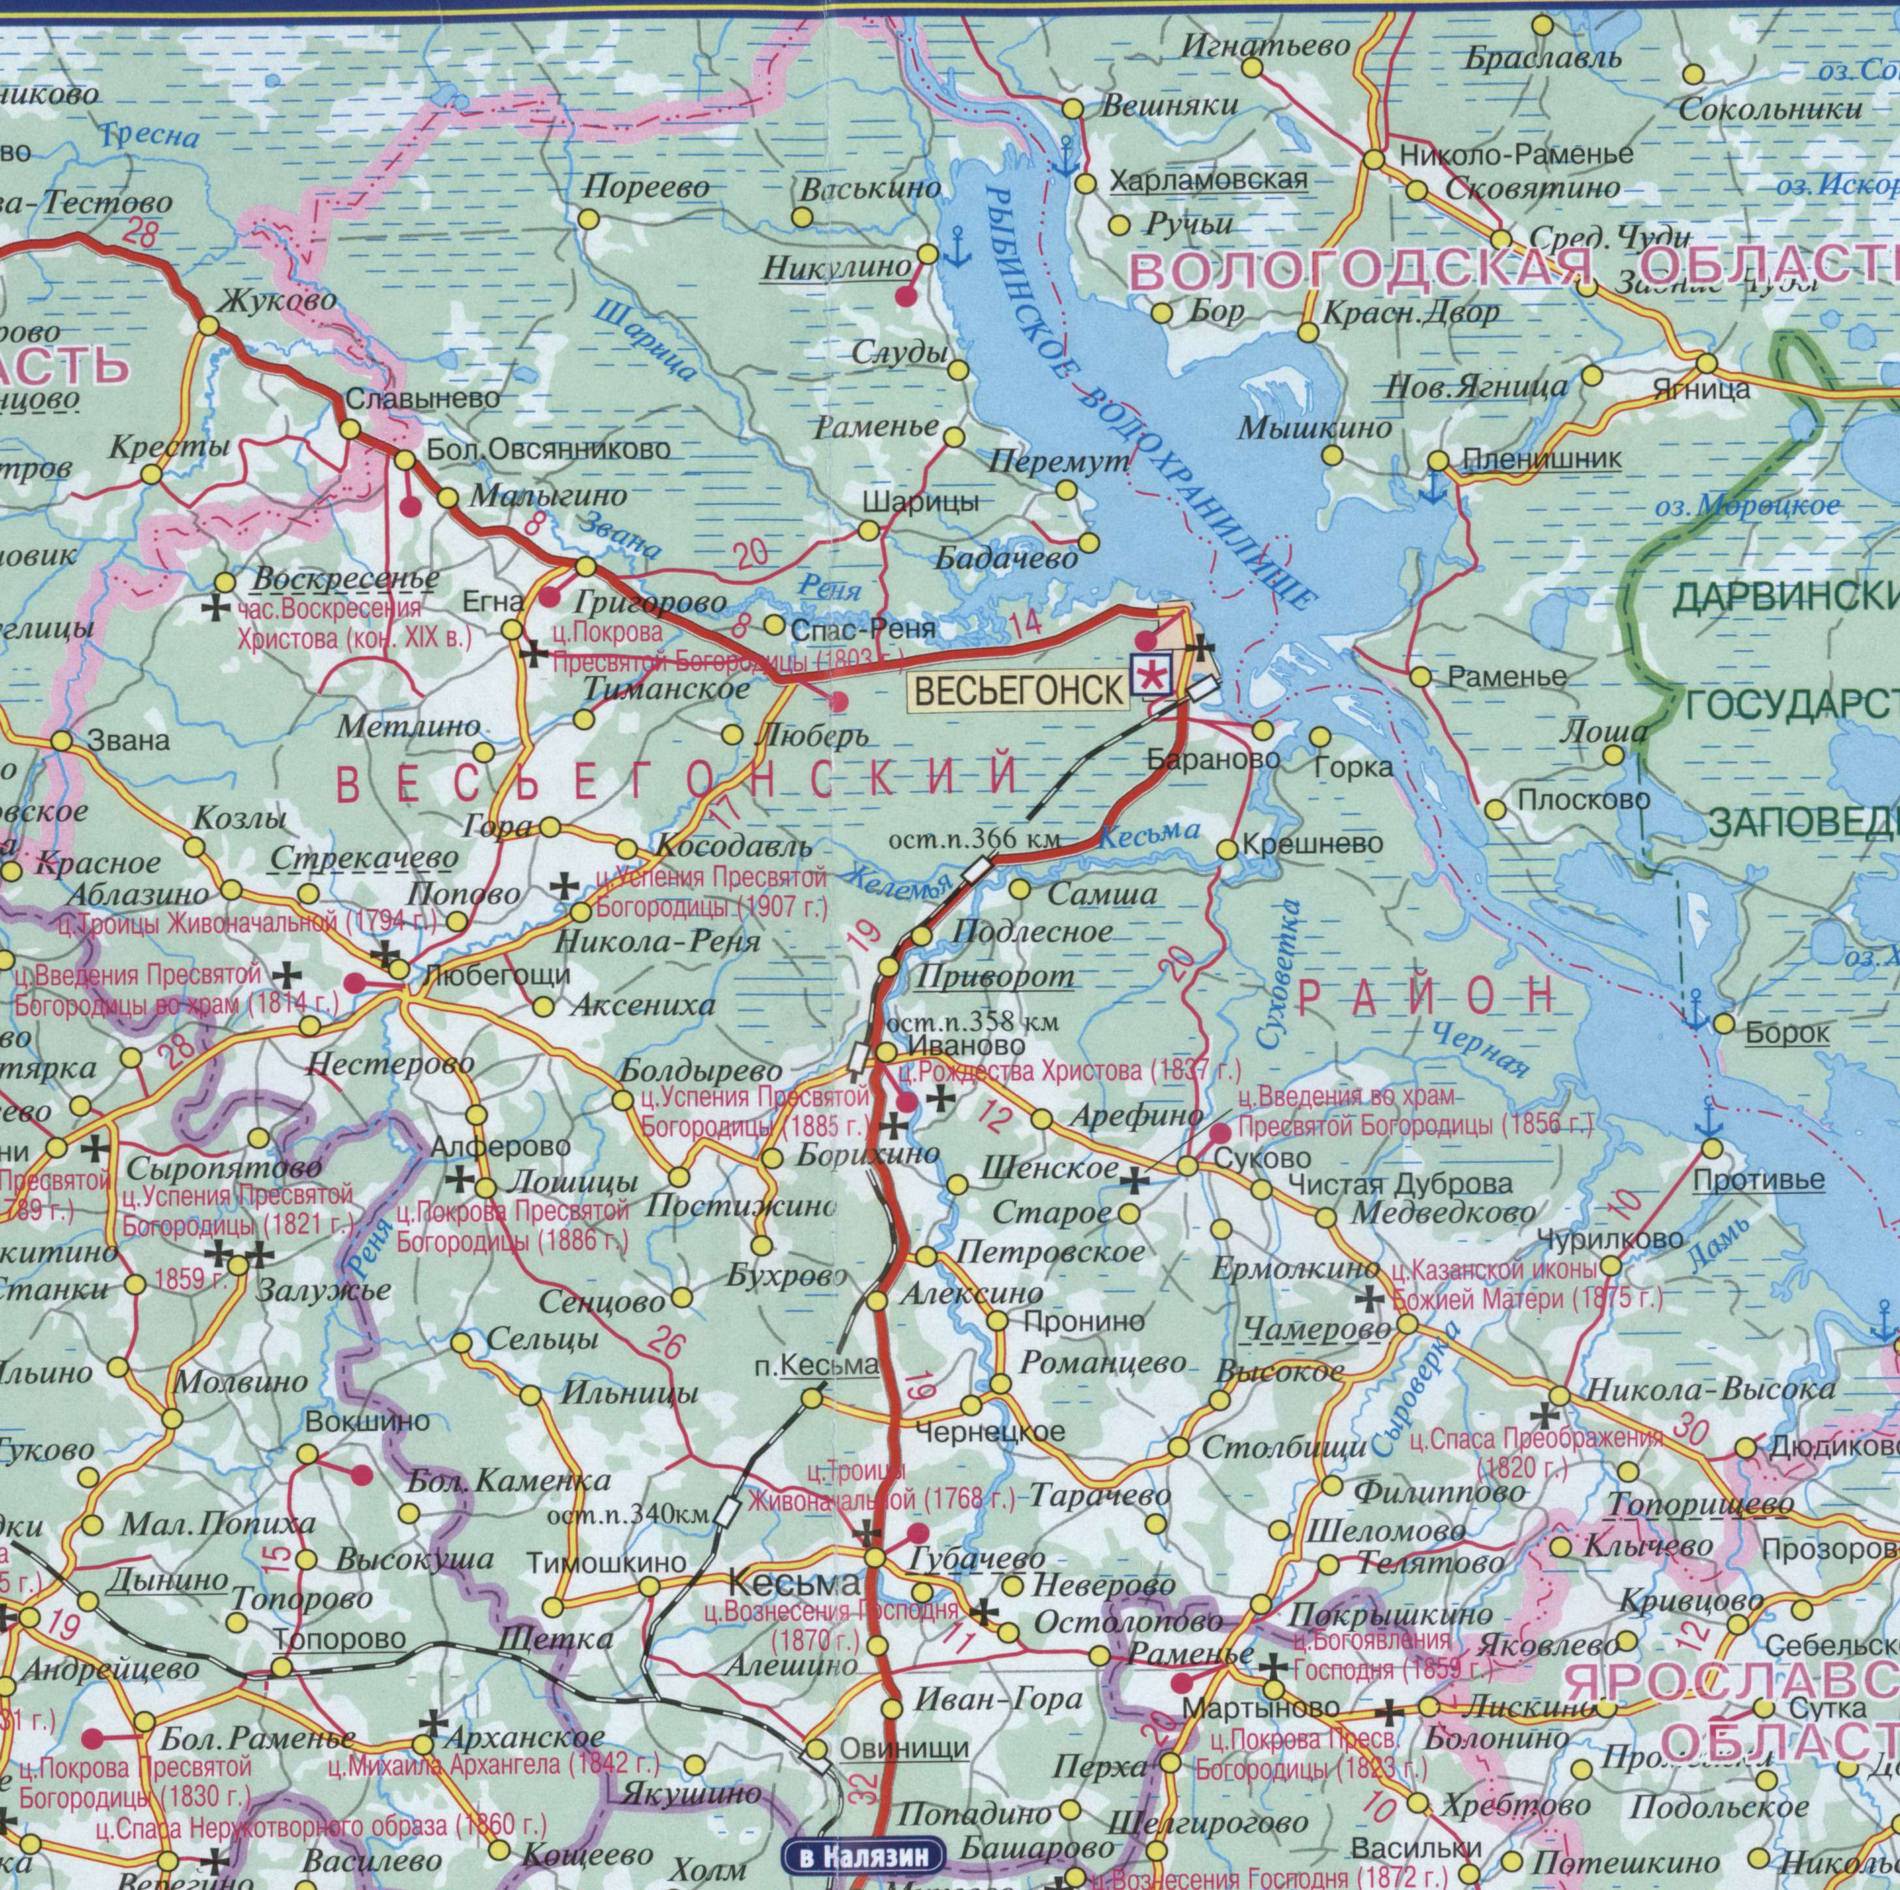 Подробная карта района c поселками - весьегонский район / тверская область / россия